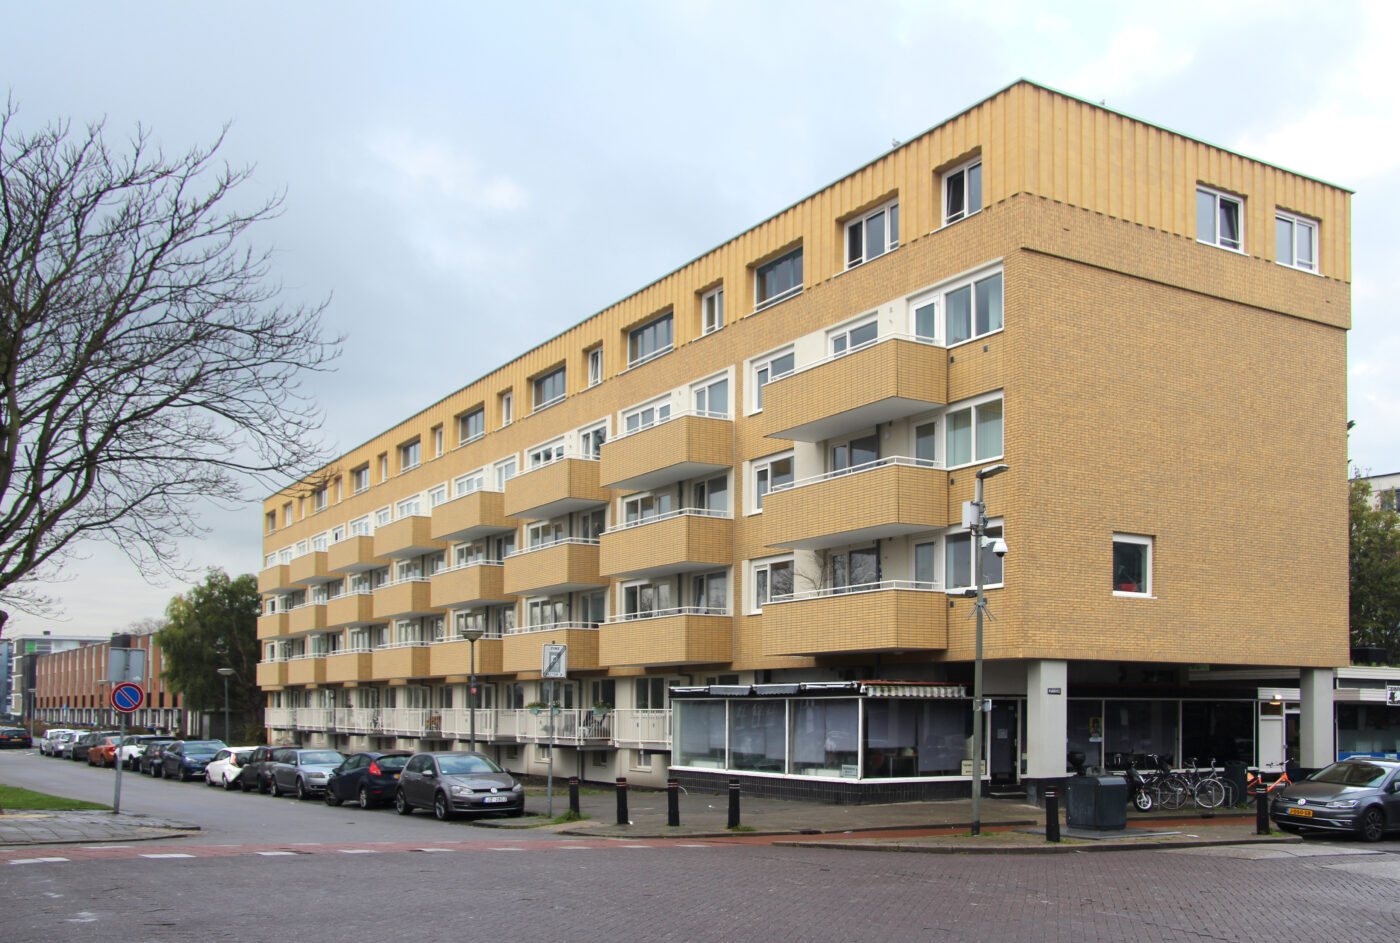 De Wiltonflats in Schiedam worden grondig gerenoveerd en geschikt gemaakt voor senioren. De eerste van drie flats is september 2022 opgeleverd. De andere twee volgen in 2023 en 2024.